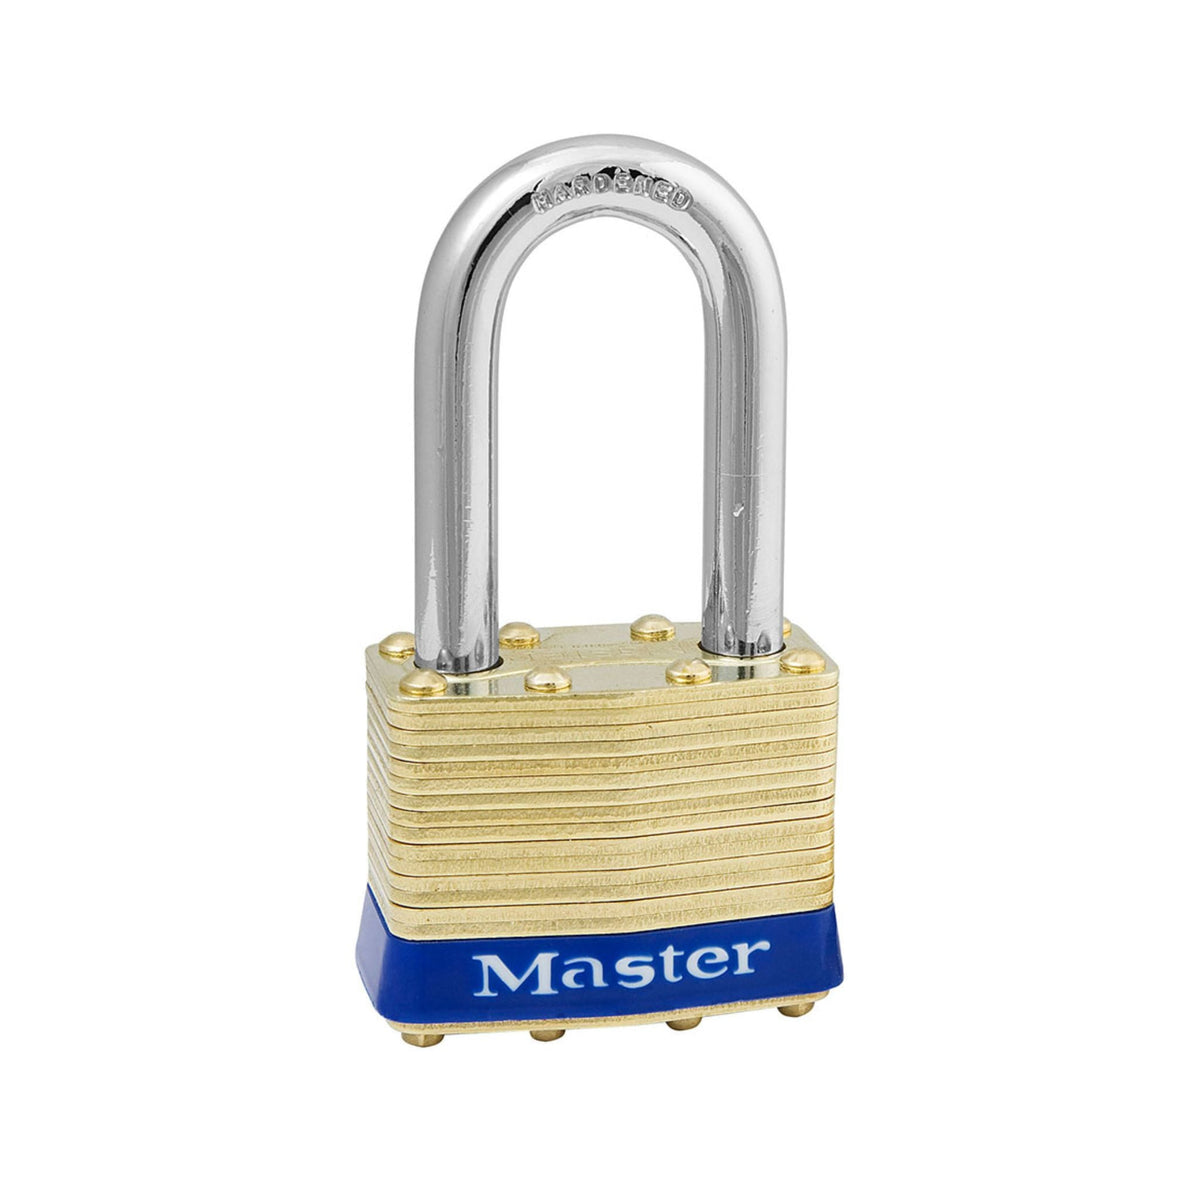 Master Lock 2KALF 2153 Lock Laminated brass No. 2 Series Padlock Keyed to Match Existing Key Number KA2153 - The Lock Source